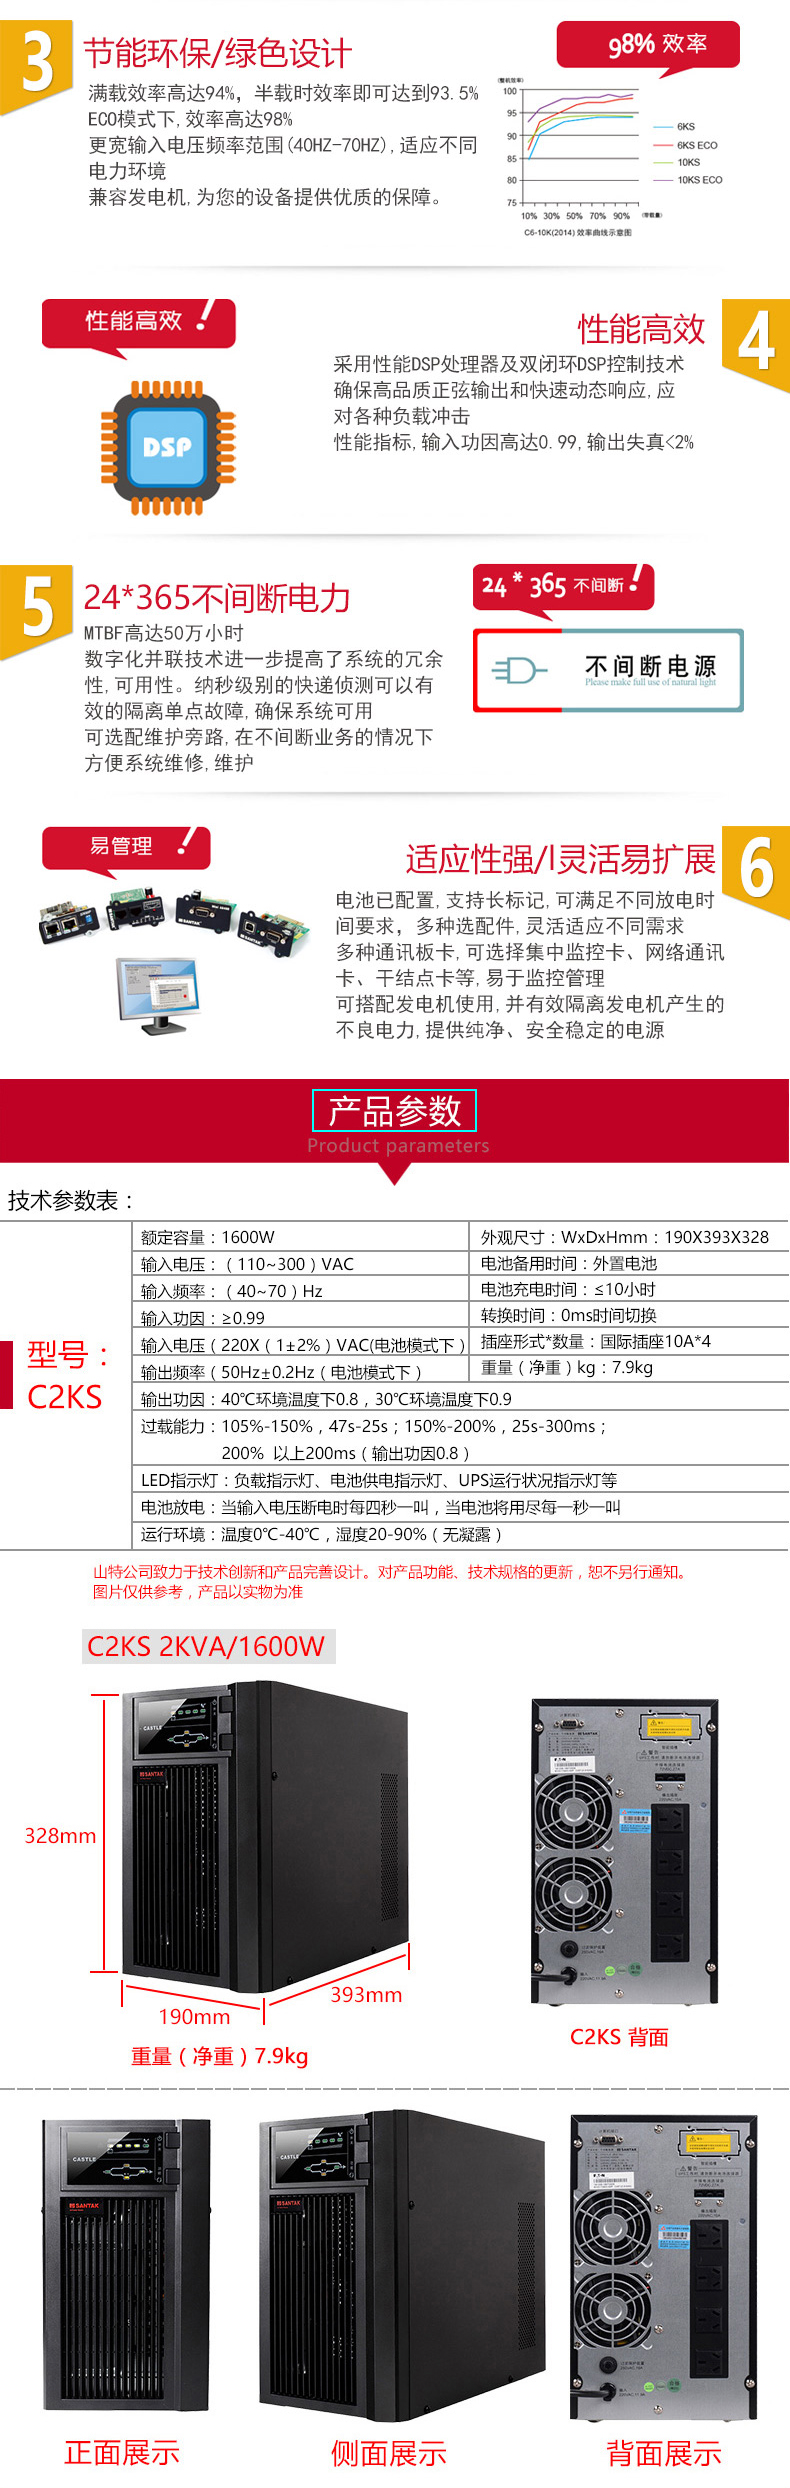 深圳山特C2KUPS电源西安代理商示例图10